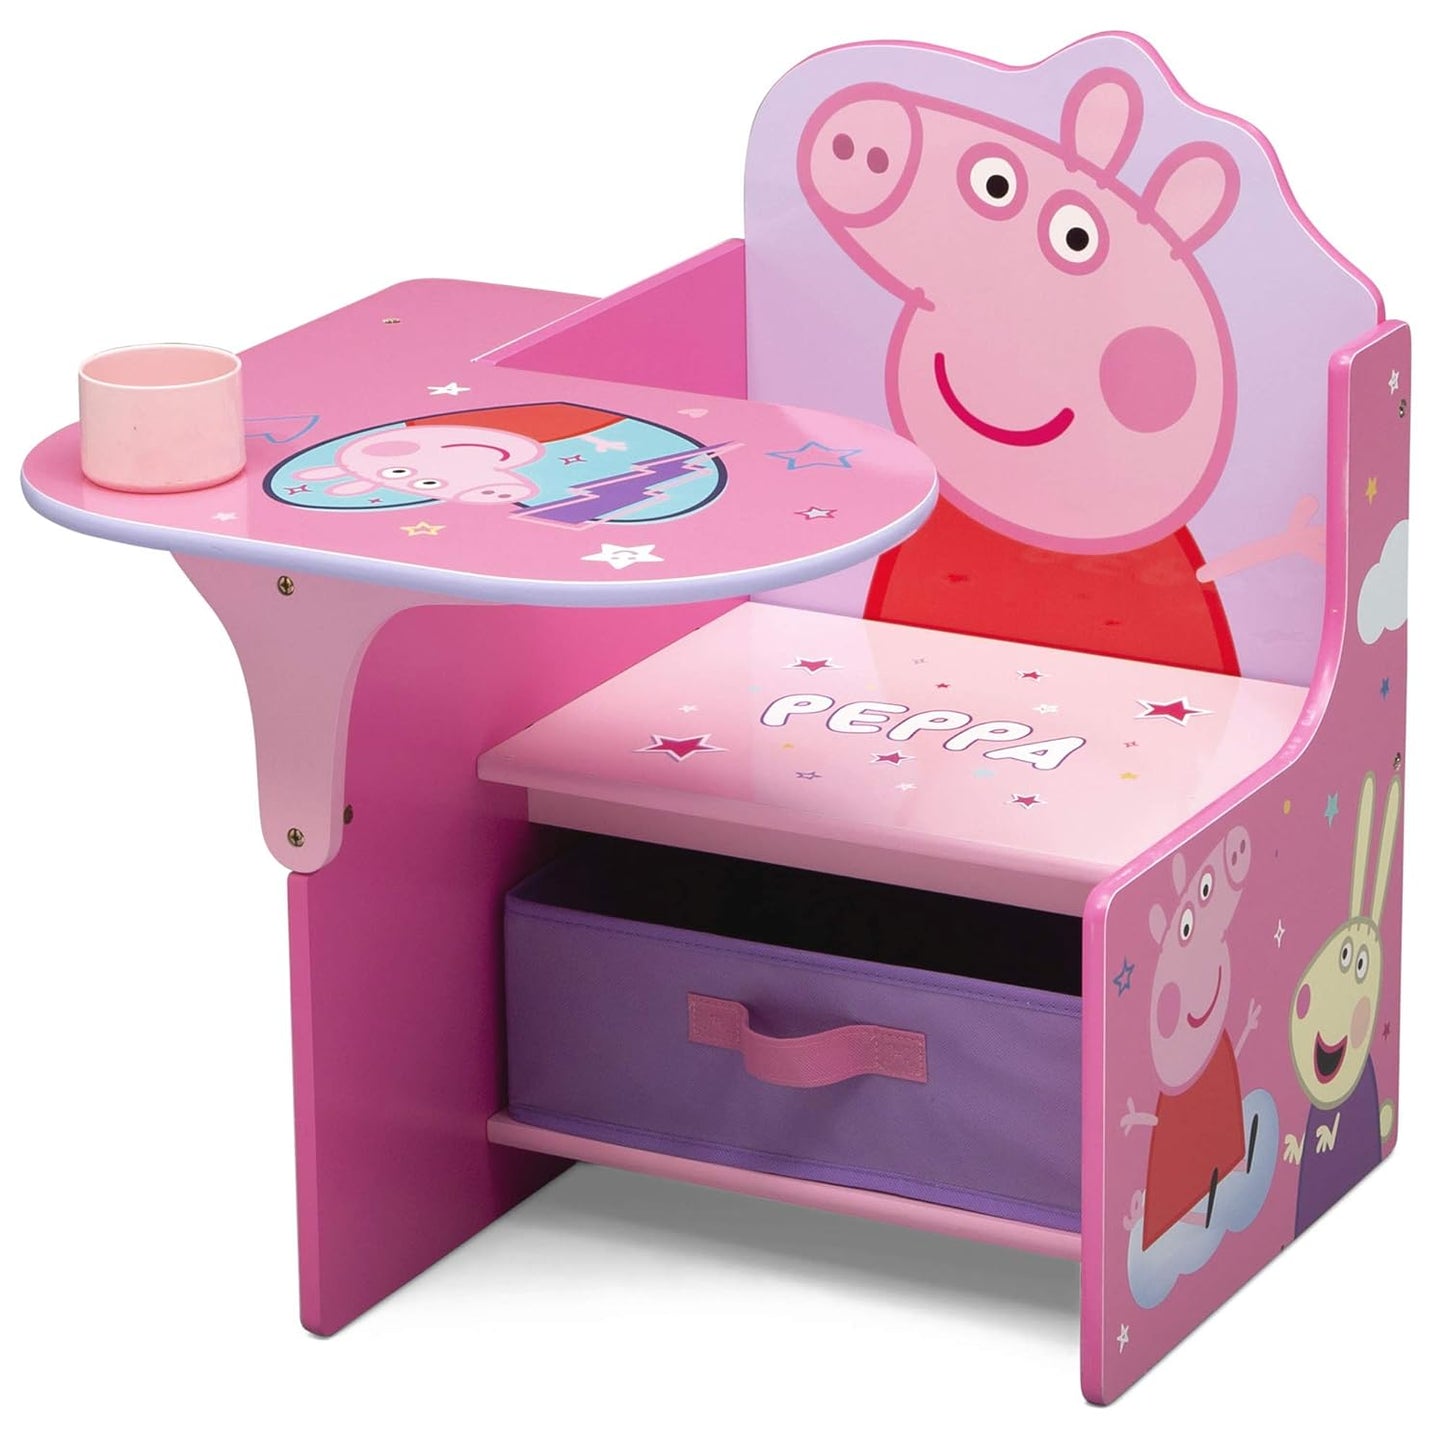 Delta Children Chair Desk with Storage Bin - Greenguard Gold Certified, Peppa Pig